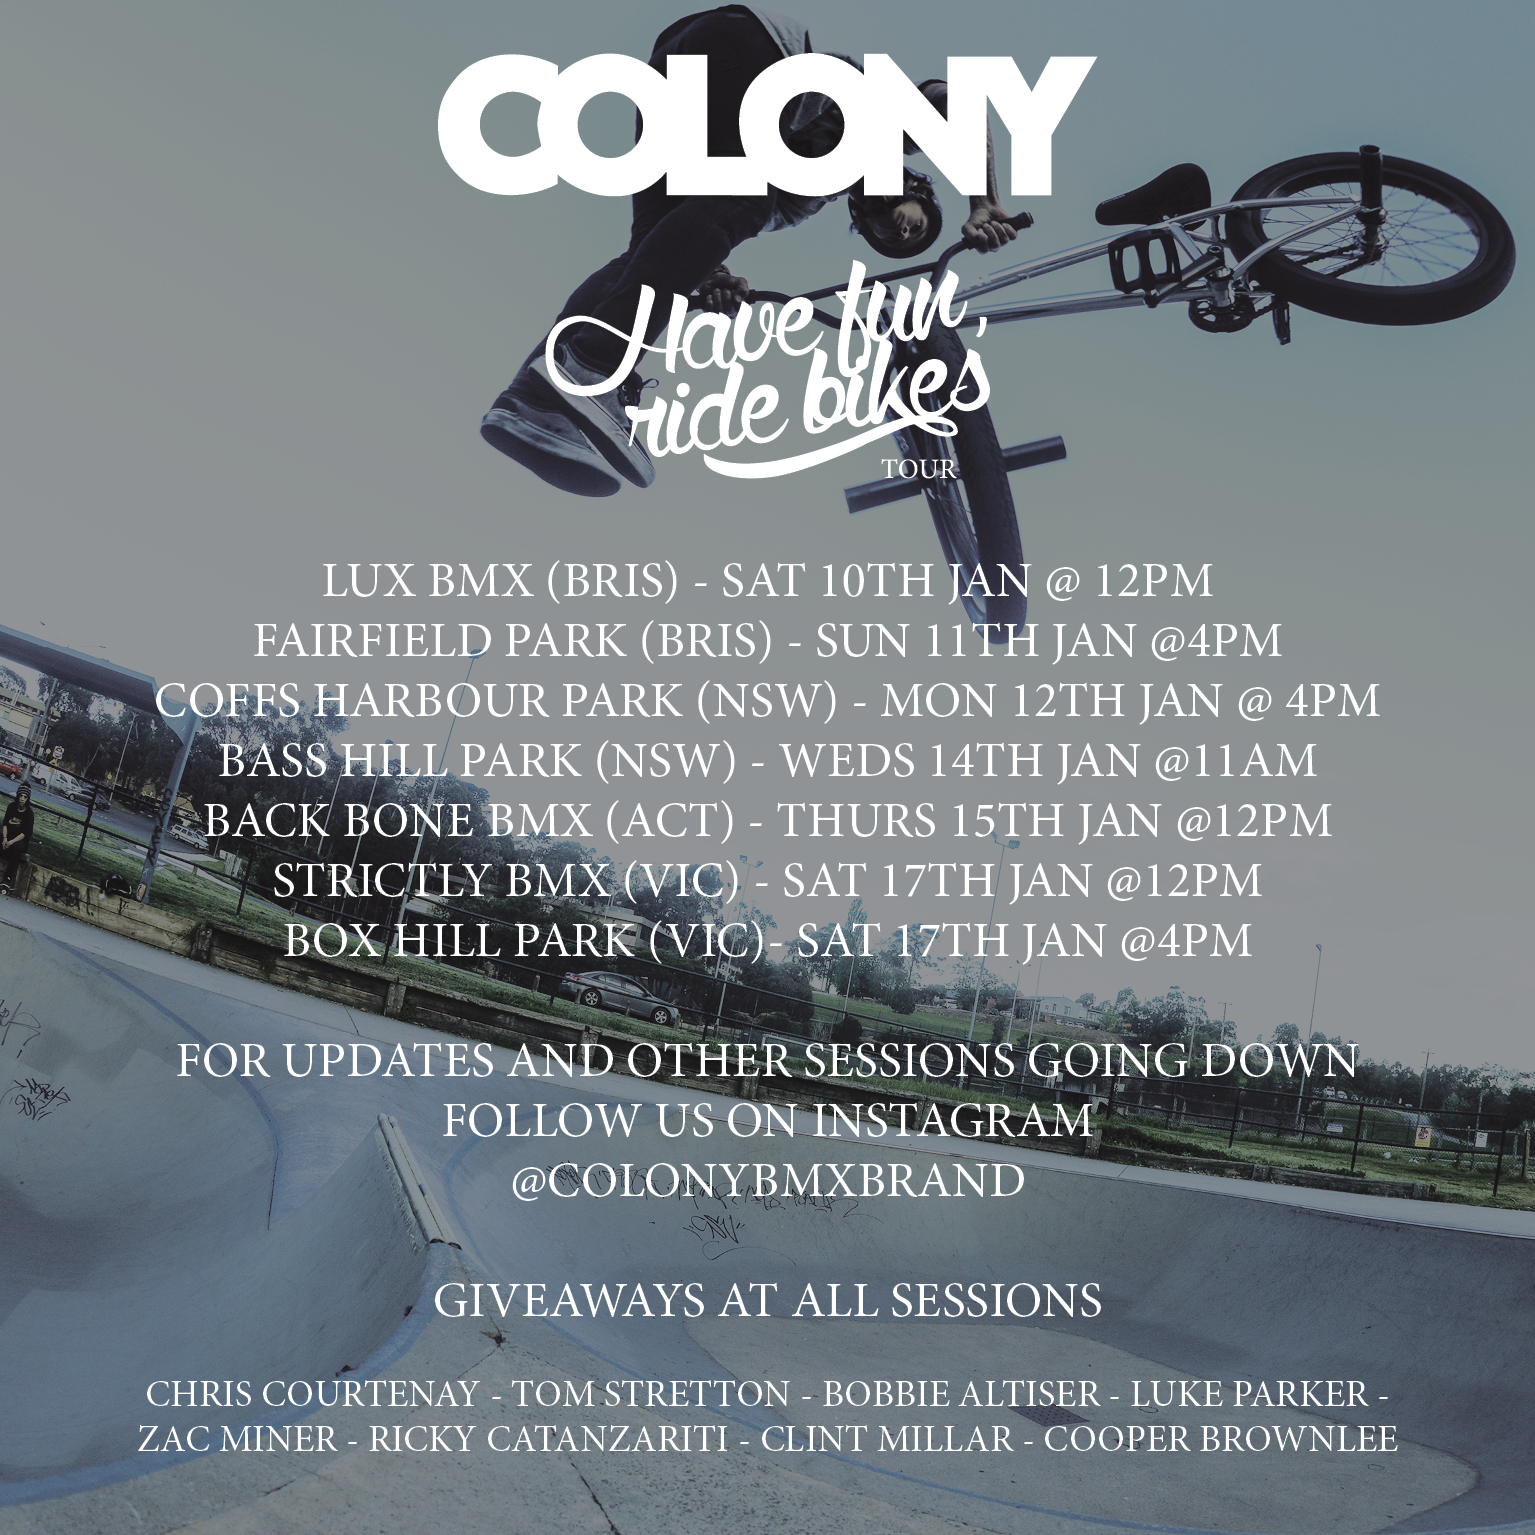 COLONY jan 2015 tour flyer